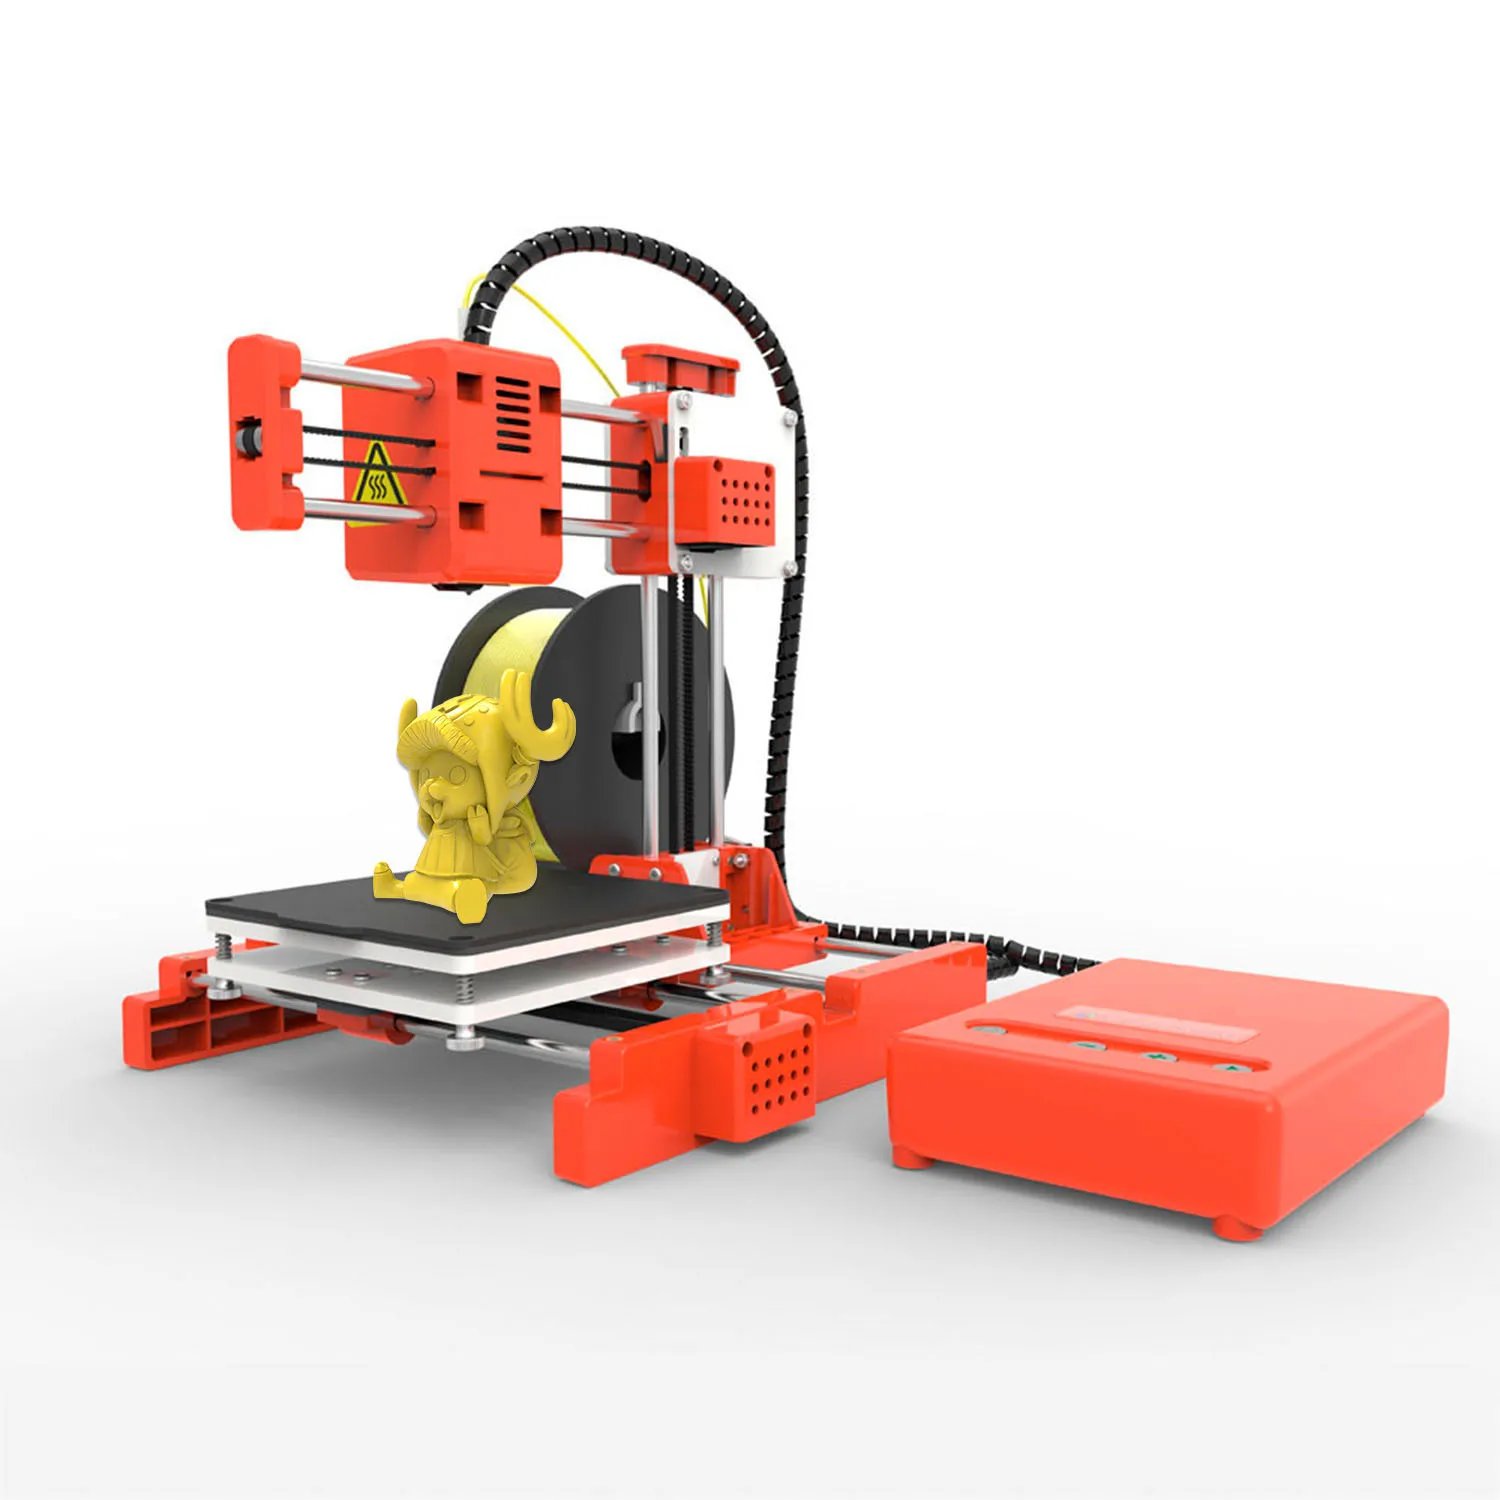 Easythreed-Mini impresora 3D X1 para niños, juguete de impresión 3D de nivel de entrada, regalo de educación Personal, impresión de una tecla fácil de usar